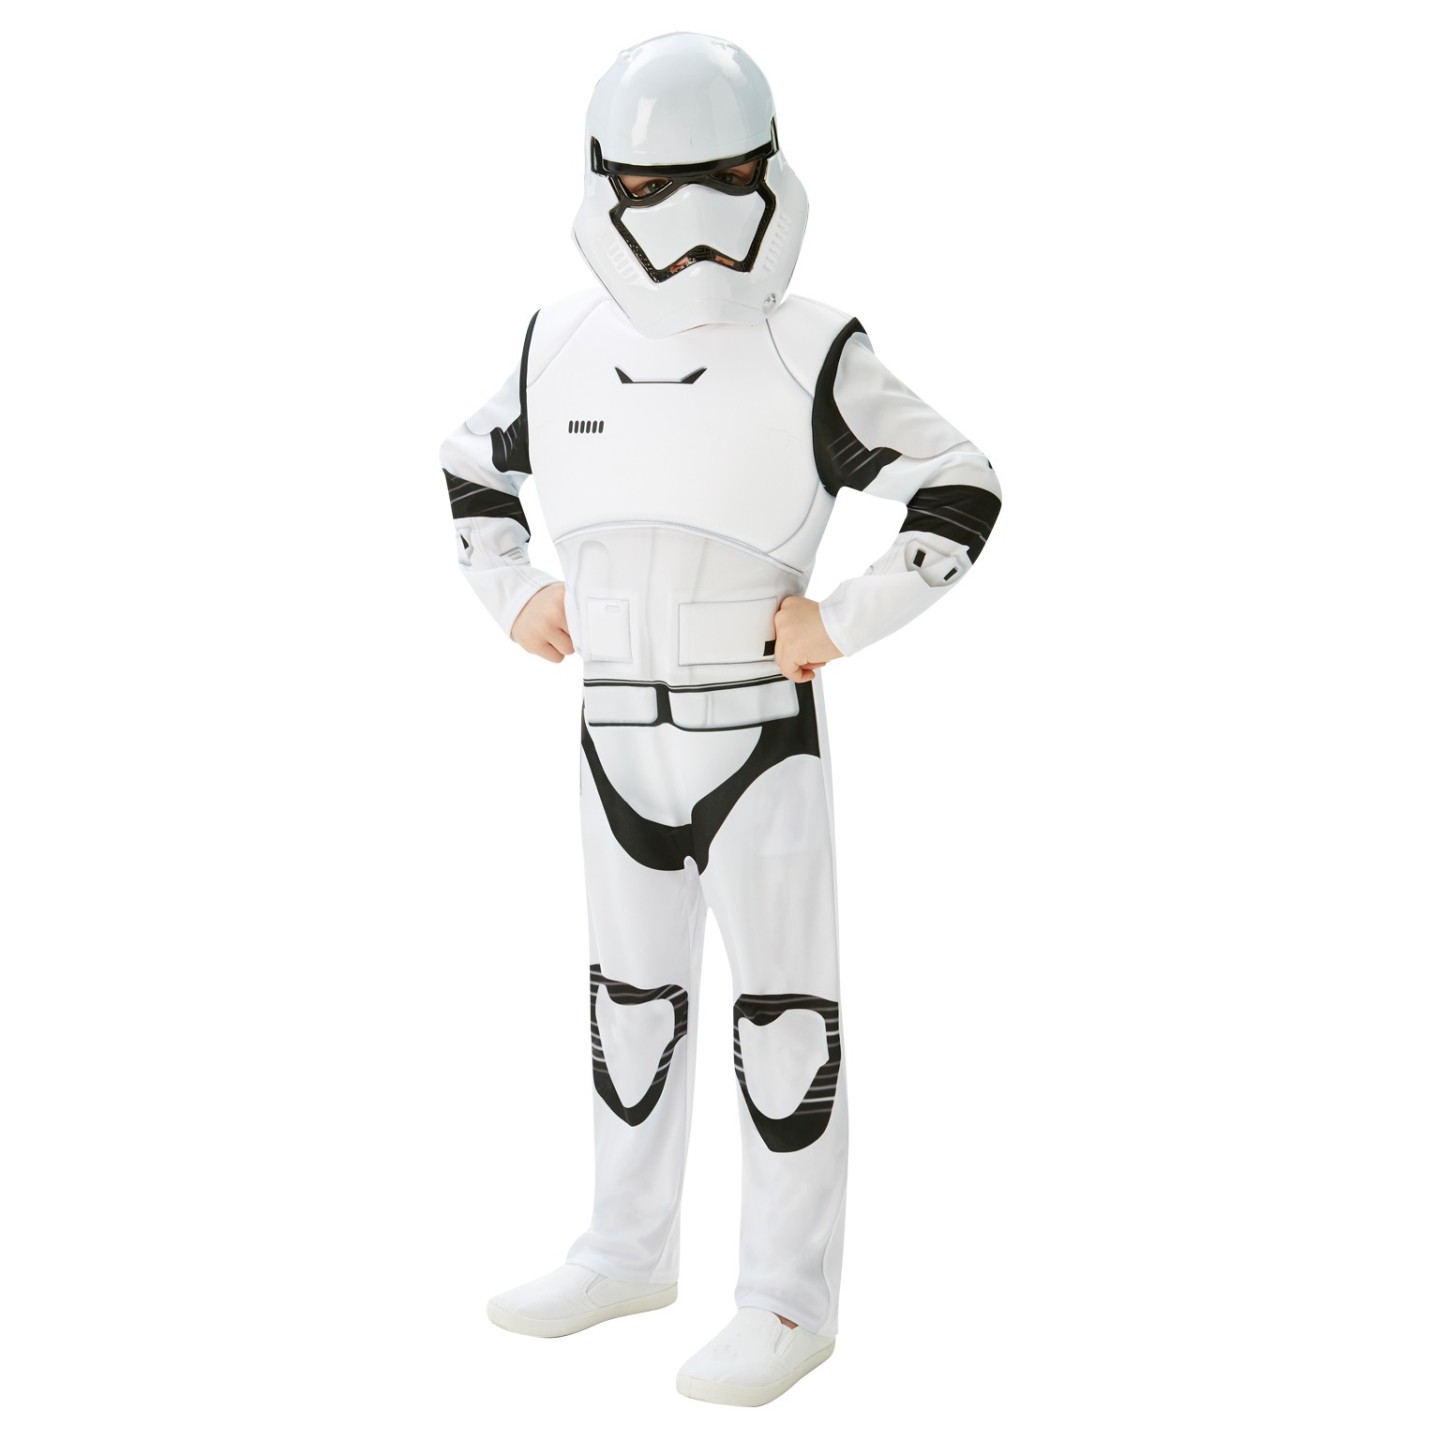 Leerling Margaret Mitchell isolatie Star Wars kostuum - Stormtrooper pak kopen ? | Jokershop feestwinkel